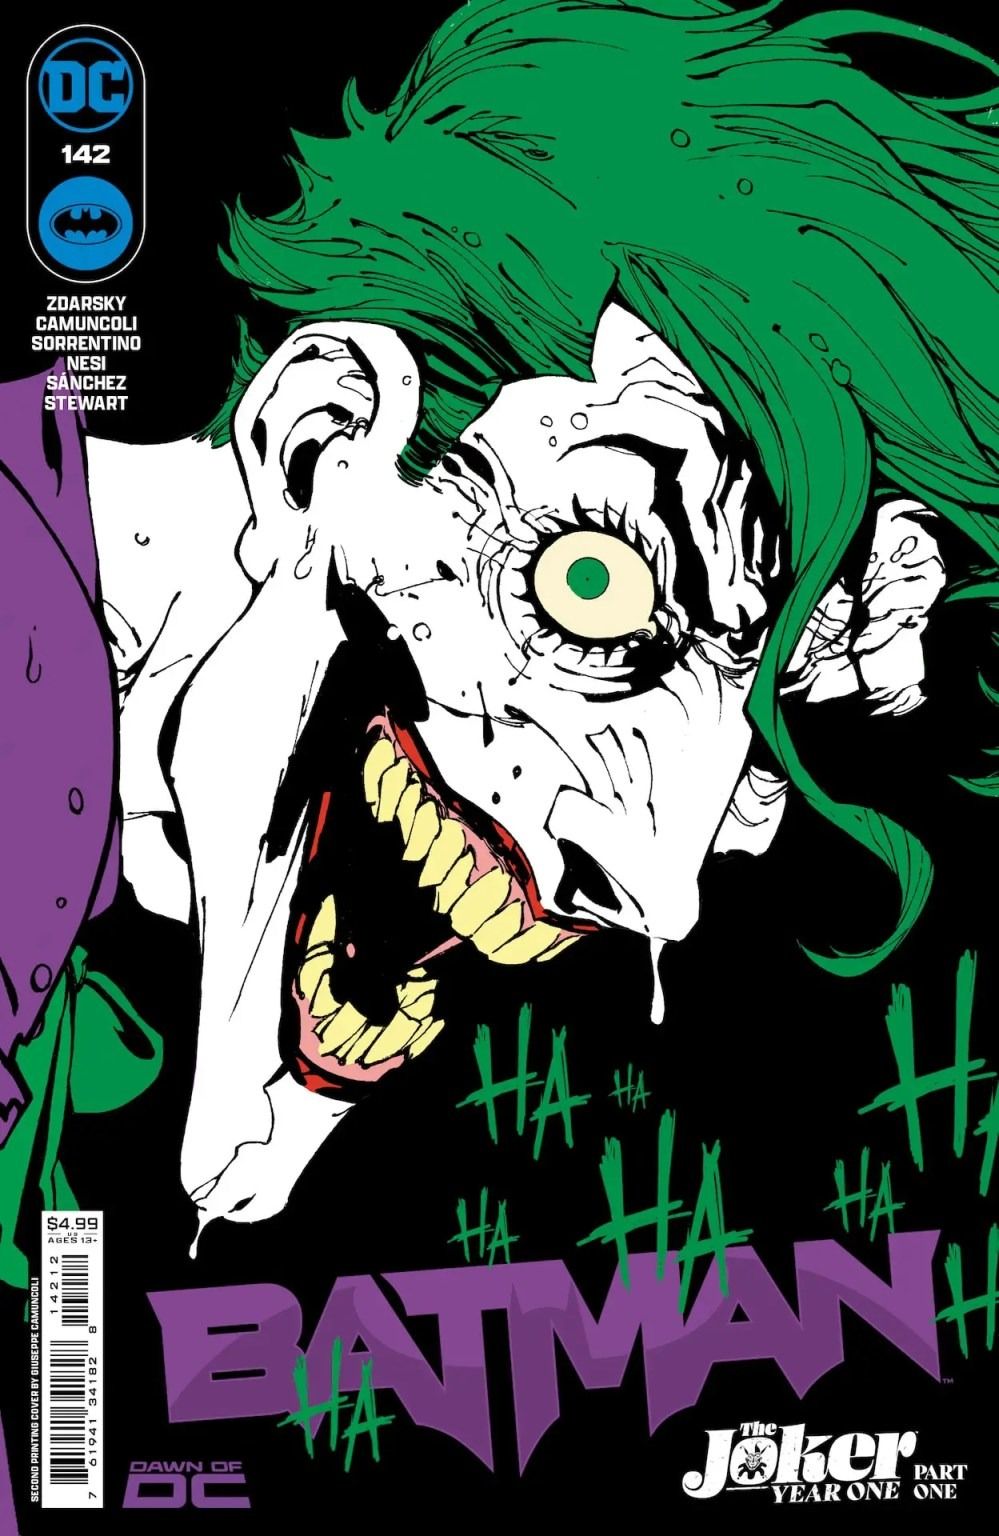 A segunda capa impressa de Batman #142